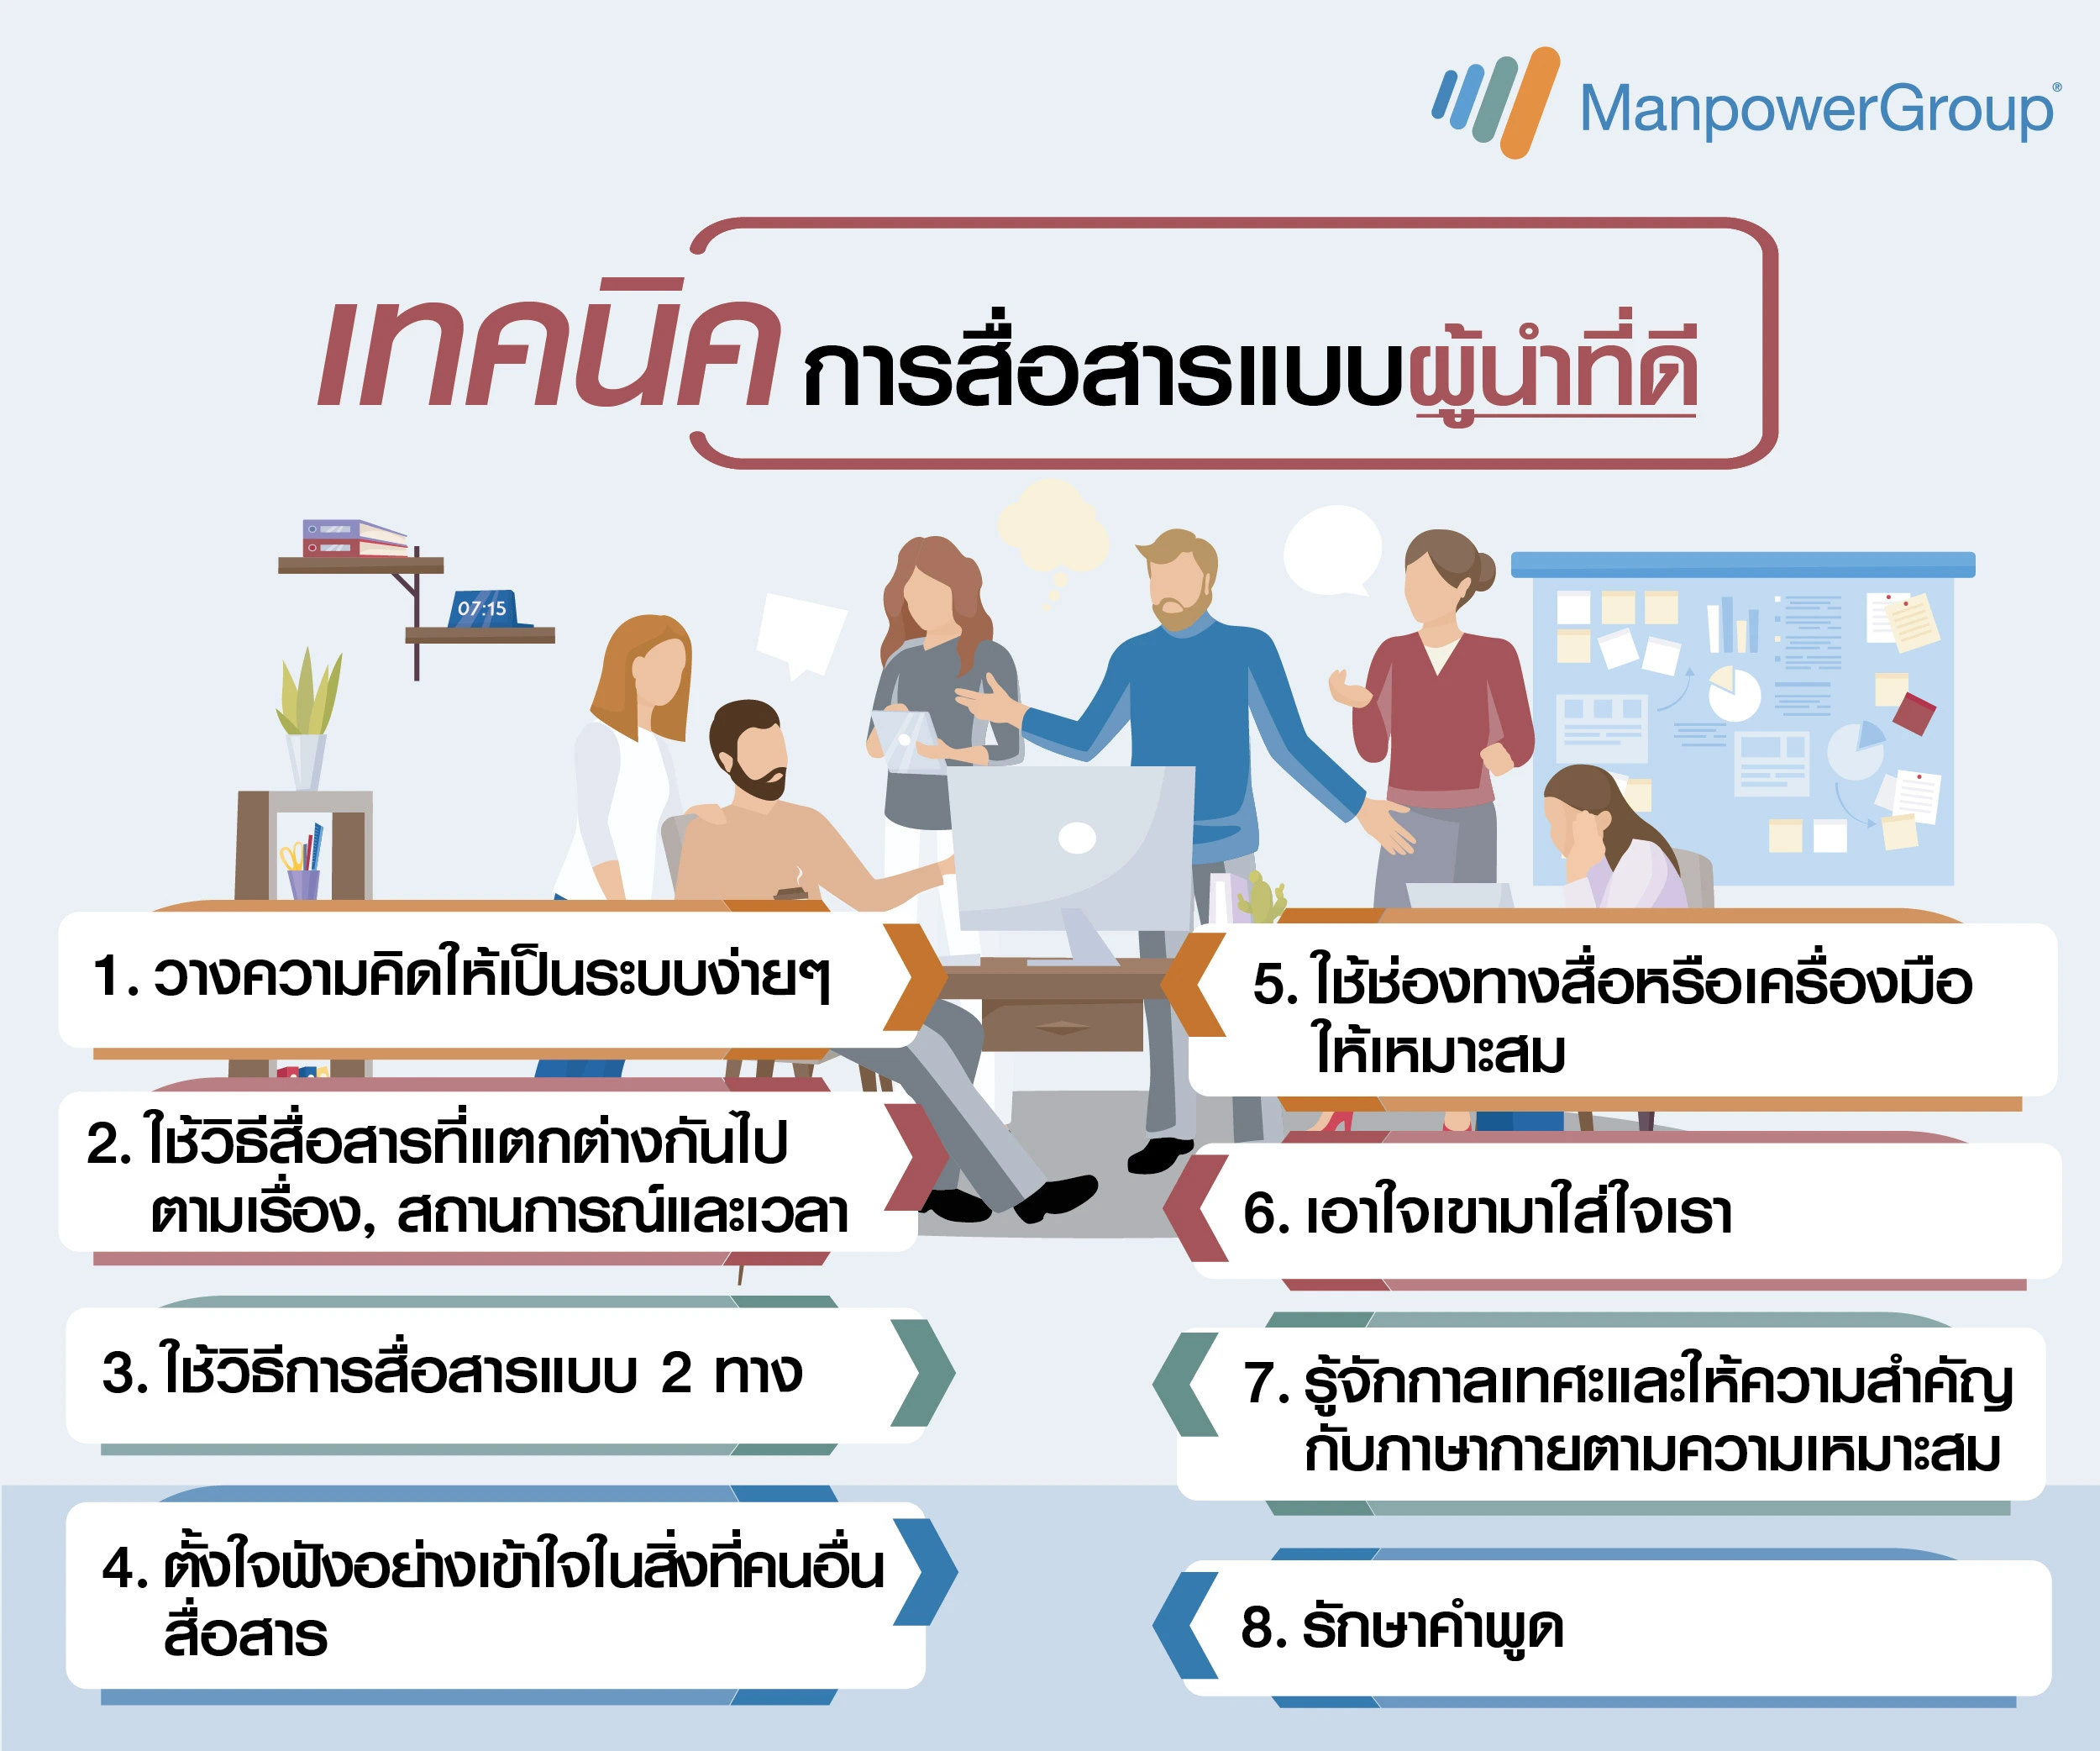 Image for blog post แมนพาวเวอร์กรุ๊ป ประเทศไทย แชร์เทคนิคการสื่อสารแบบมีสกิลของผู้นำที่ดี